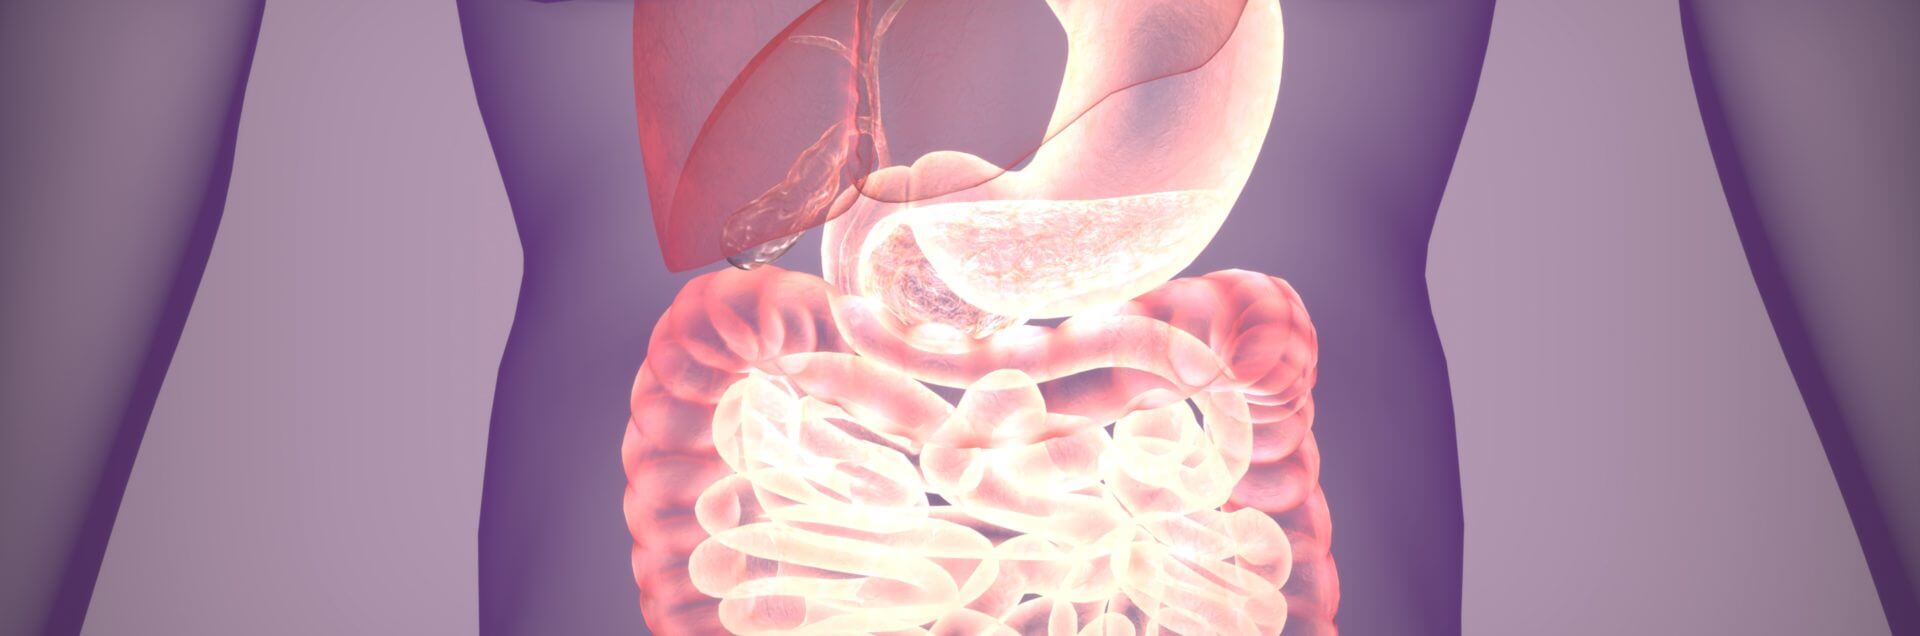 3d illustration of digestive system